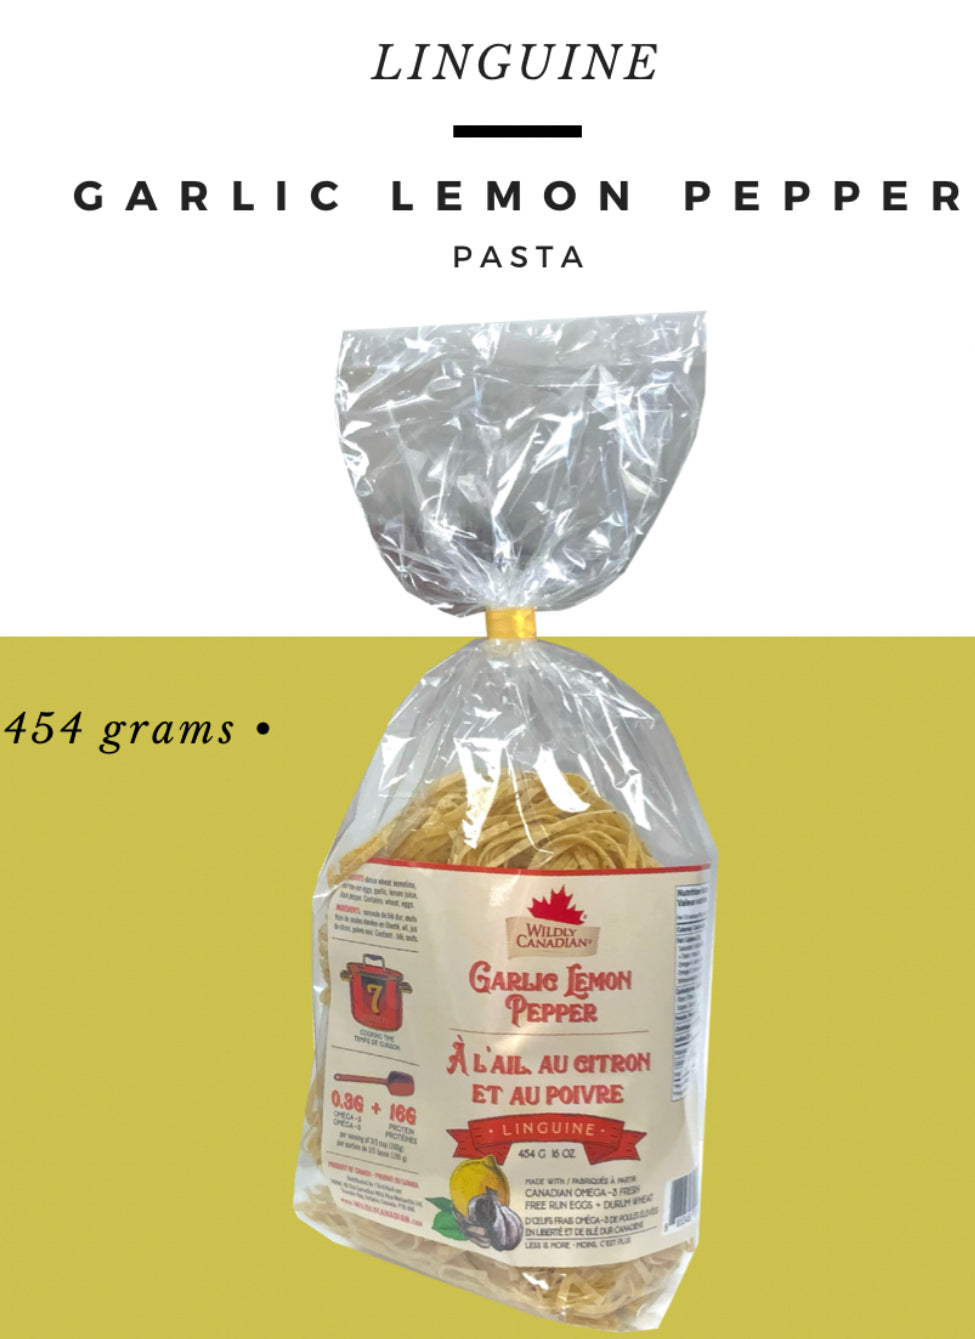 Garlic Lemon Pepper Linguine